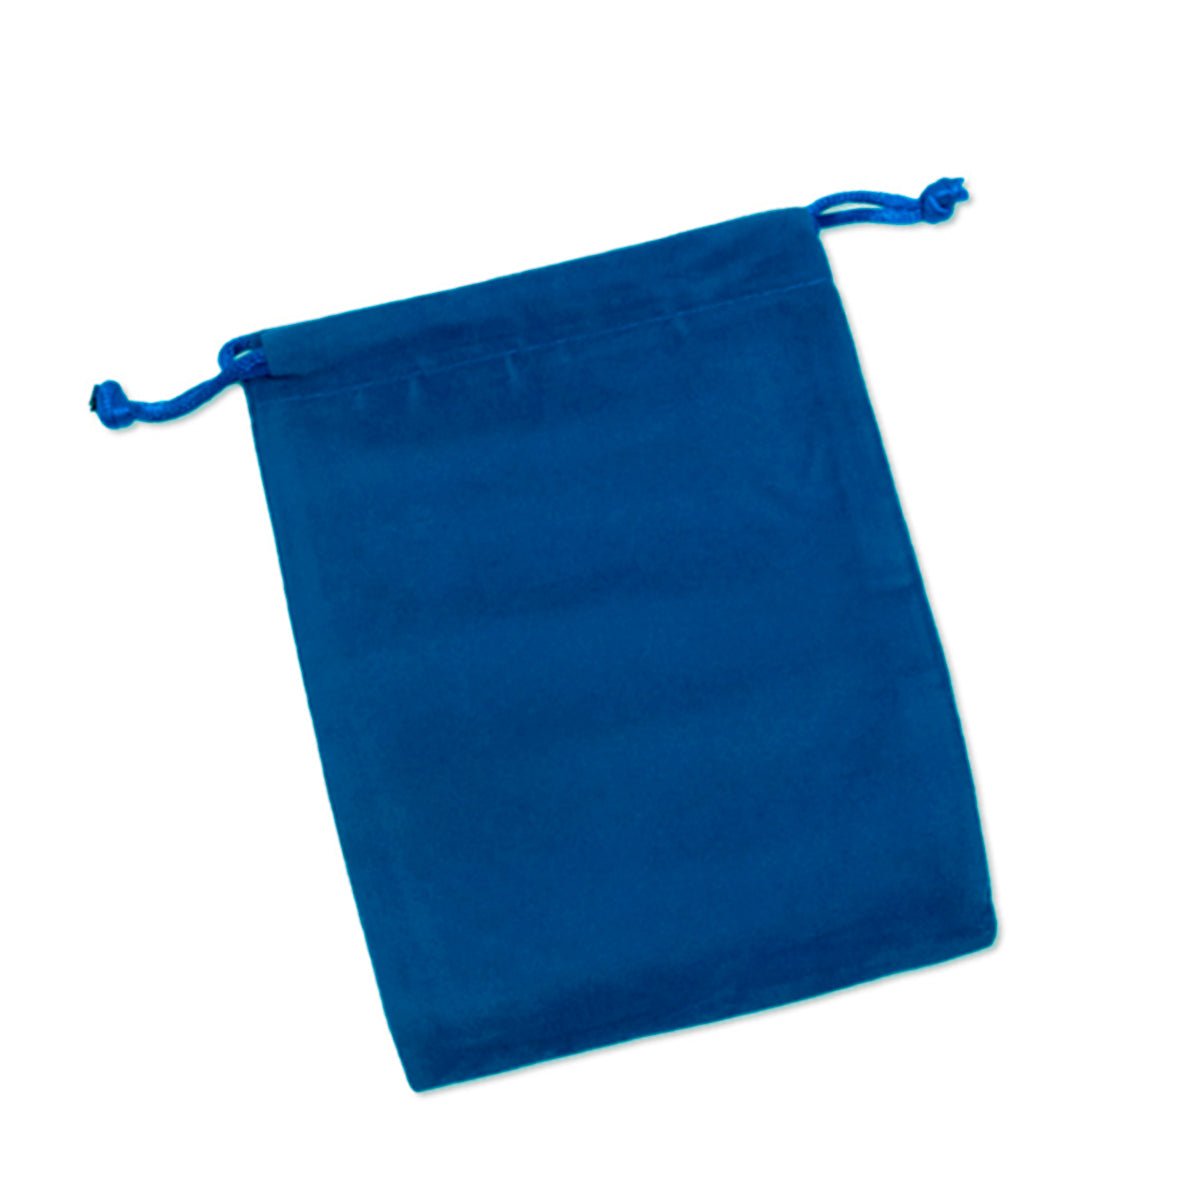 Blue Velvet Bag 4x5.5 inches - 13 Moons